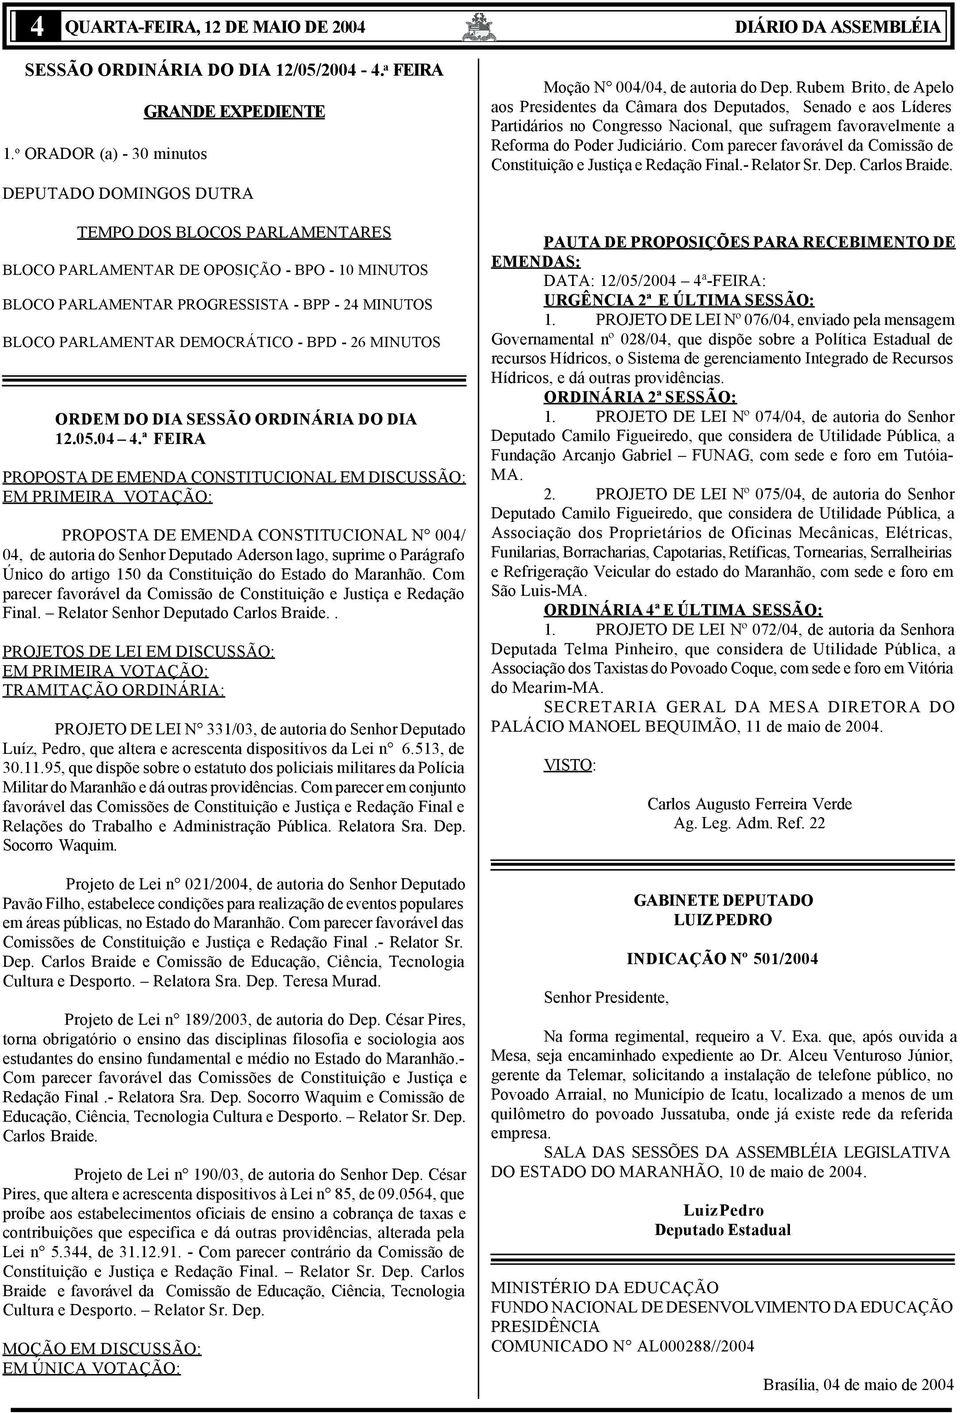 BLOCO PARLAMENTAR DEMOCRÁTICO - BPD - 26 MINUTOS ORDEM DO DIA SESSÃO ORDINÁRIA DO DIA 12.05.04 4.